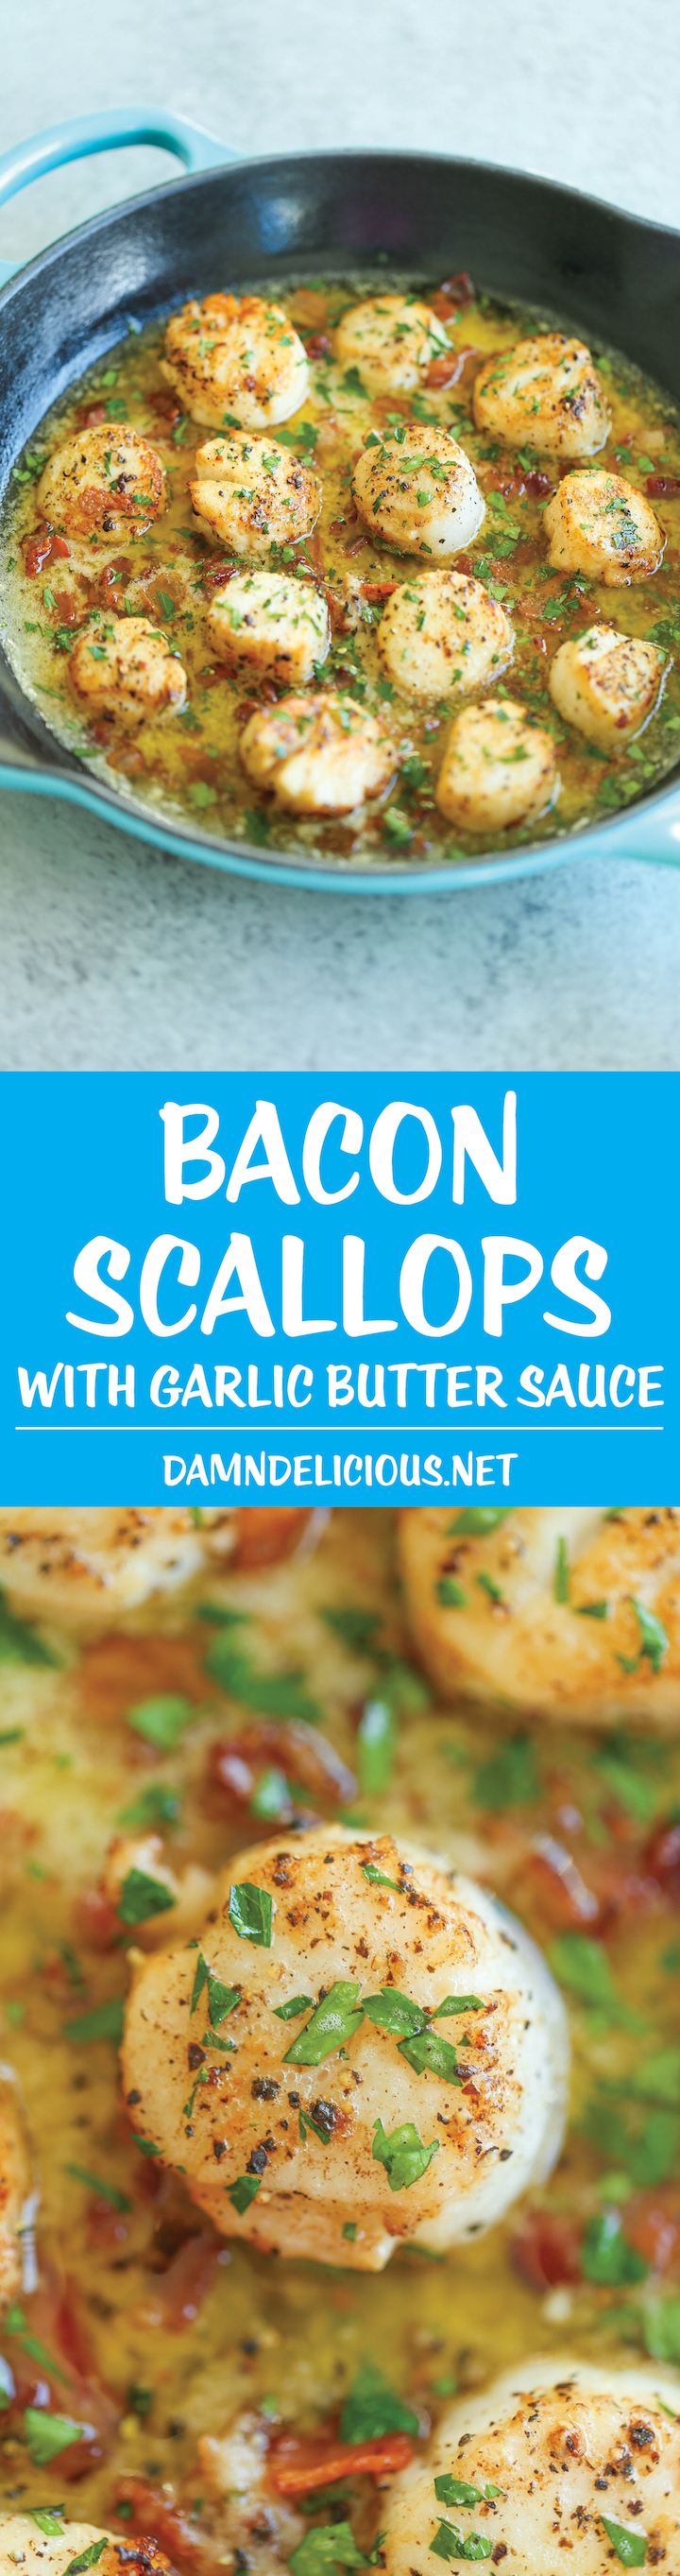 Bacon Scallops with Garlic Butter Sauce - Damn Delicious